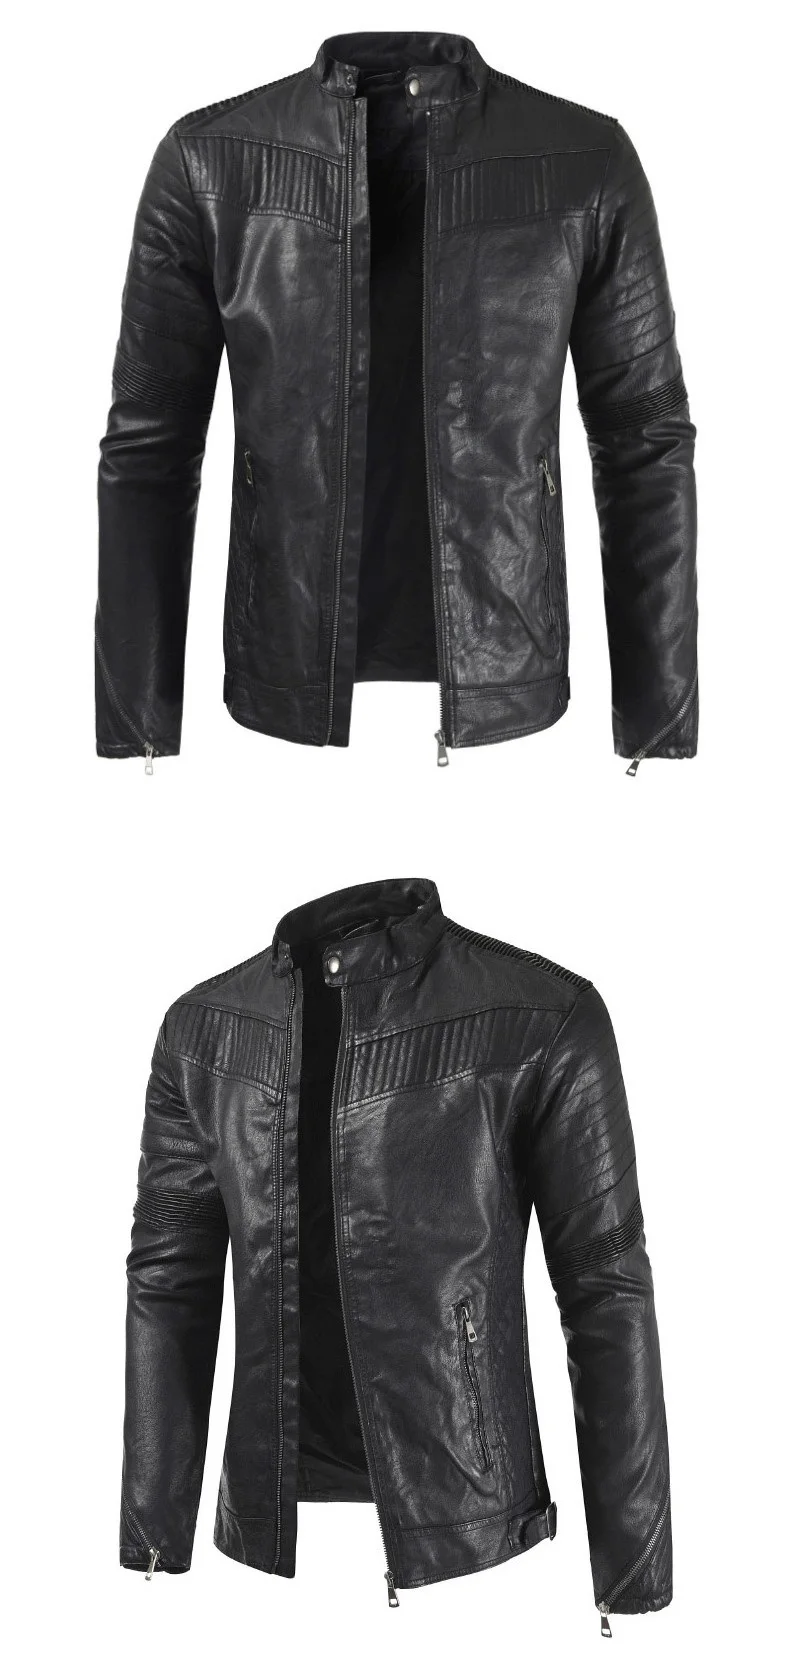 Мужская кожаная куртка, весна-осень, Новое поступление, мужская повседневная мотоциклетная куртка из искусственной кожи, приталенная брендовая мужская одежда